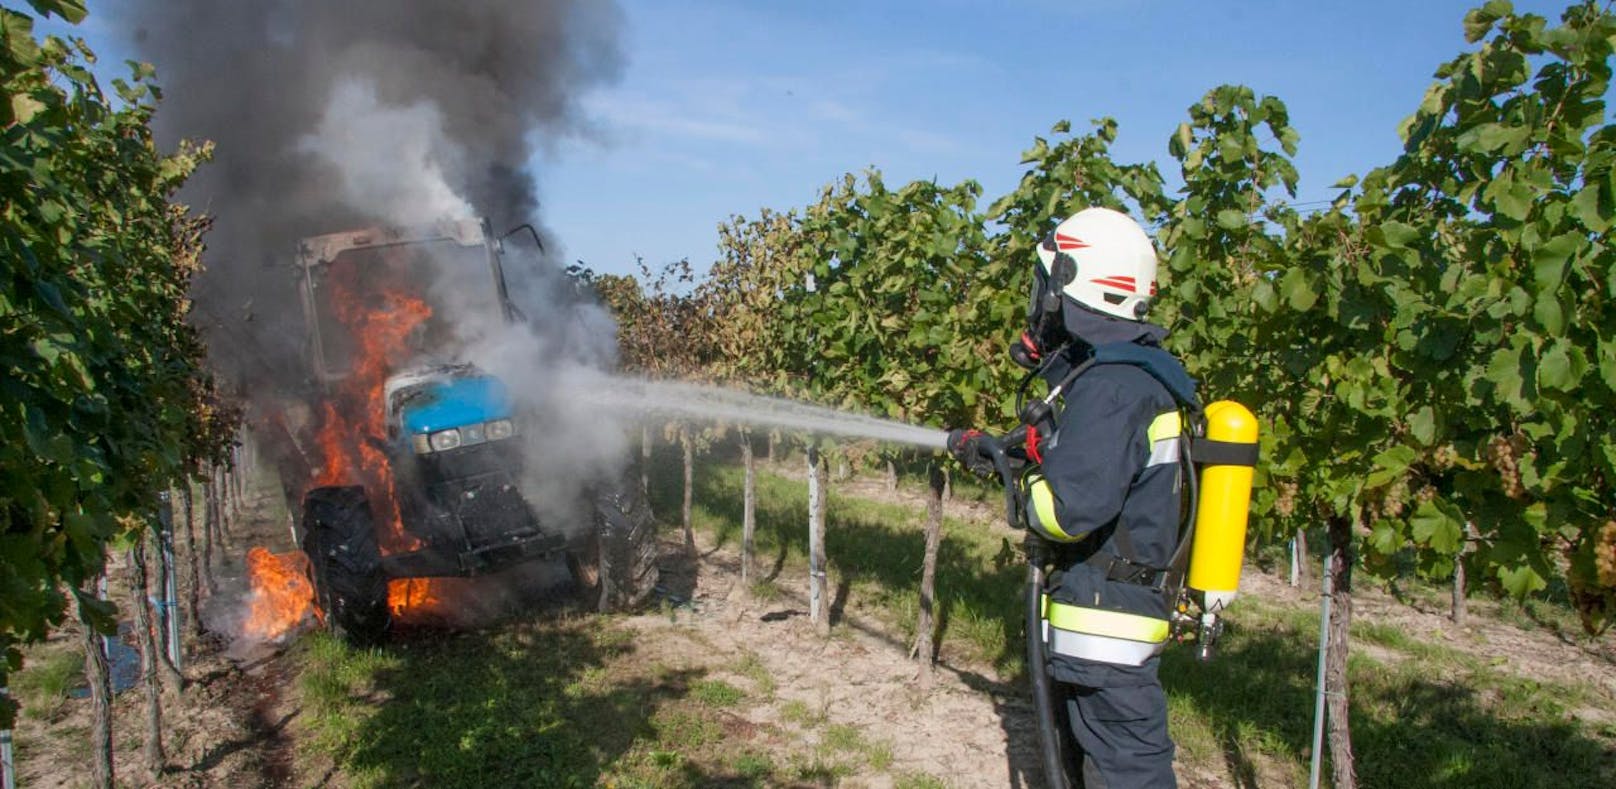 Traktor ging bei Weinlese plötzlich in Flammen auf